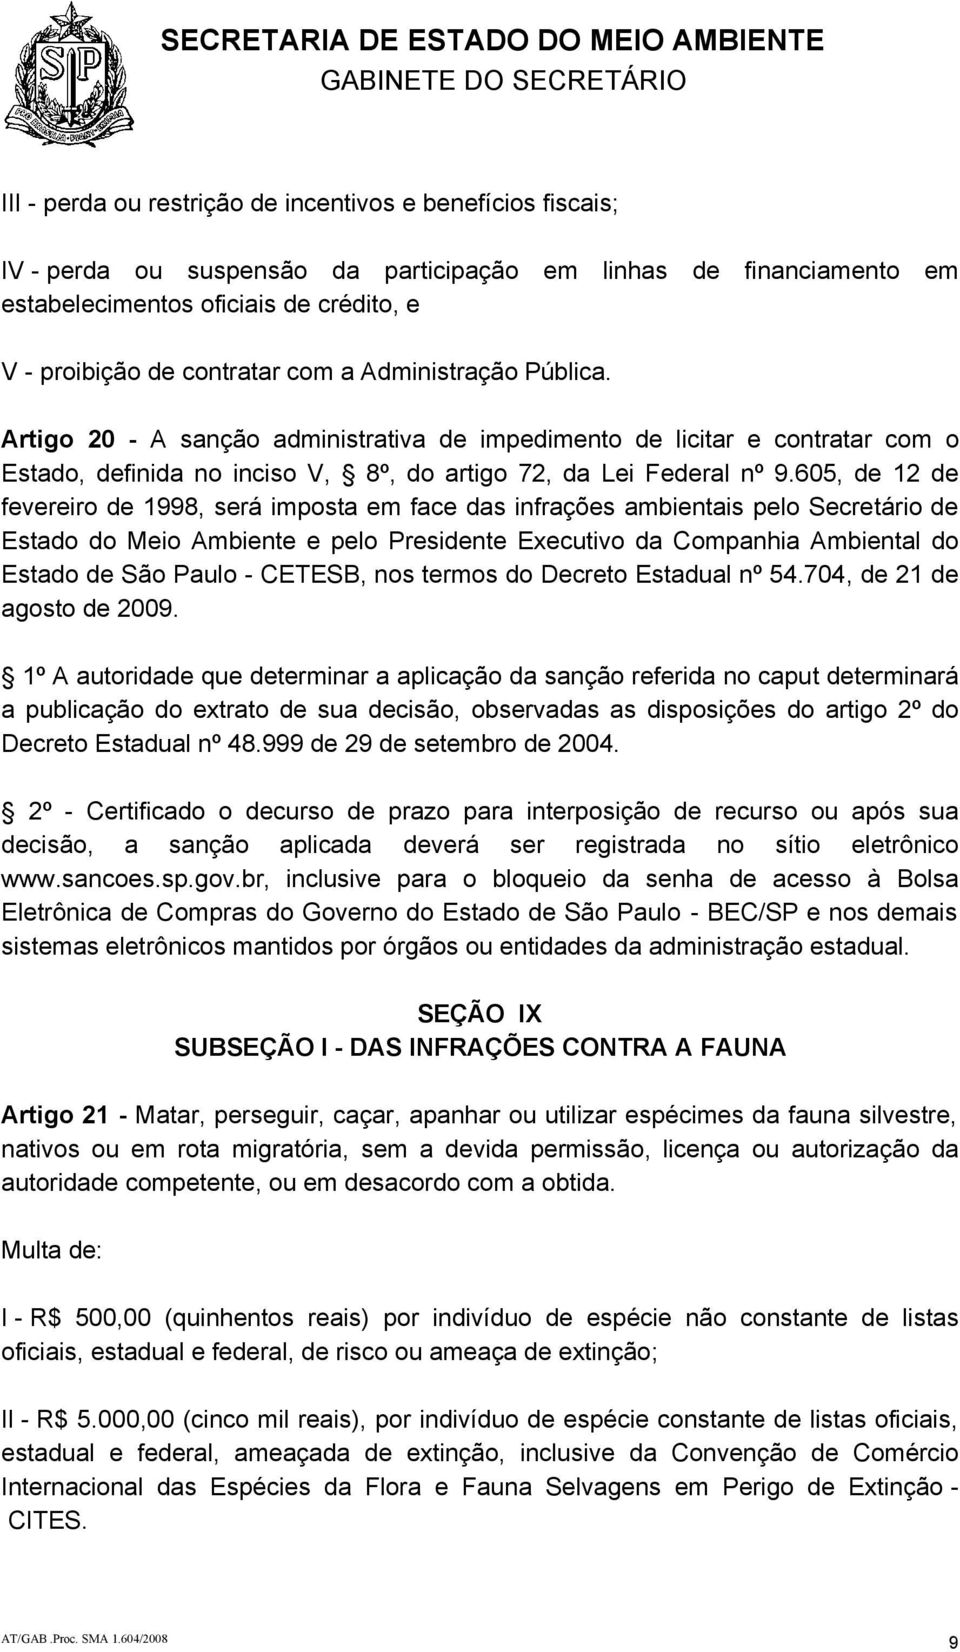 605, de 12 de fevereiro de 1998, será imposta em face das infrações ambientais pelo Secretário de Estado do Meio Ambiente e pelo Presidente Executivo da Companhia Ambiental do Estado de São Paulo -